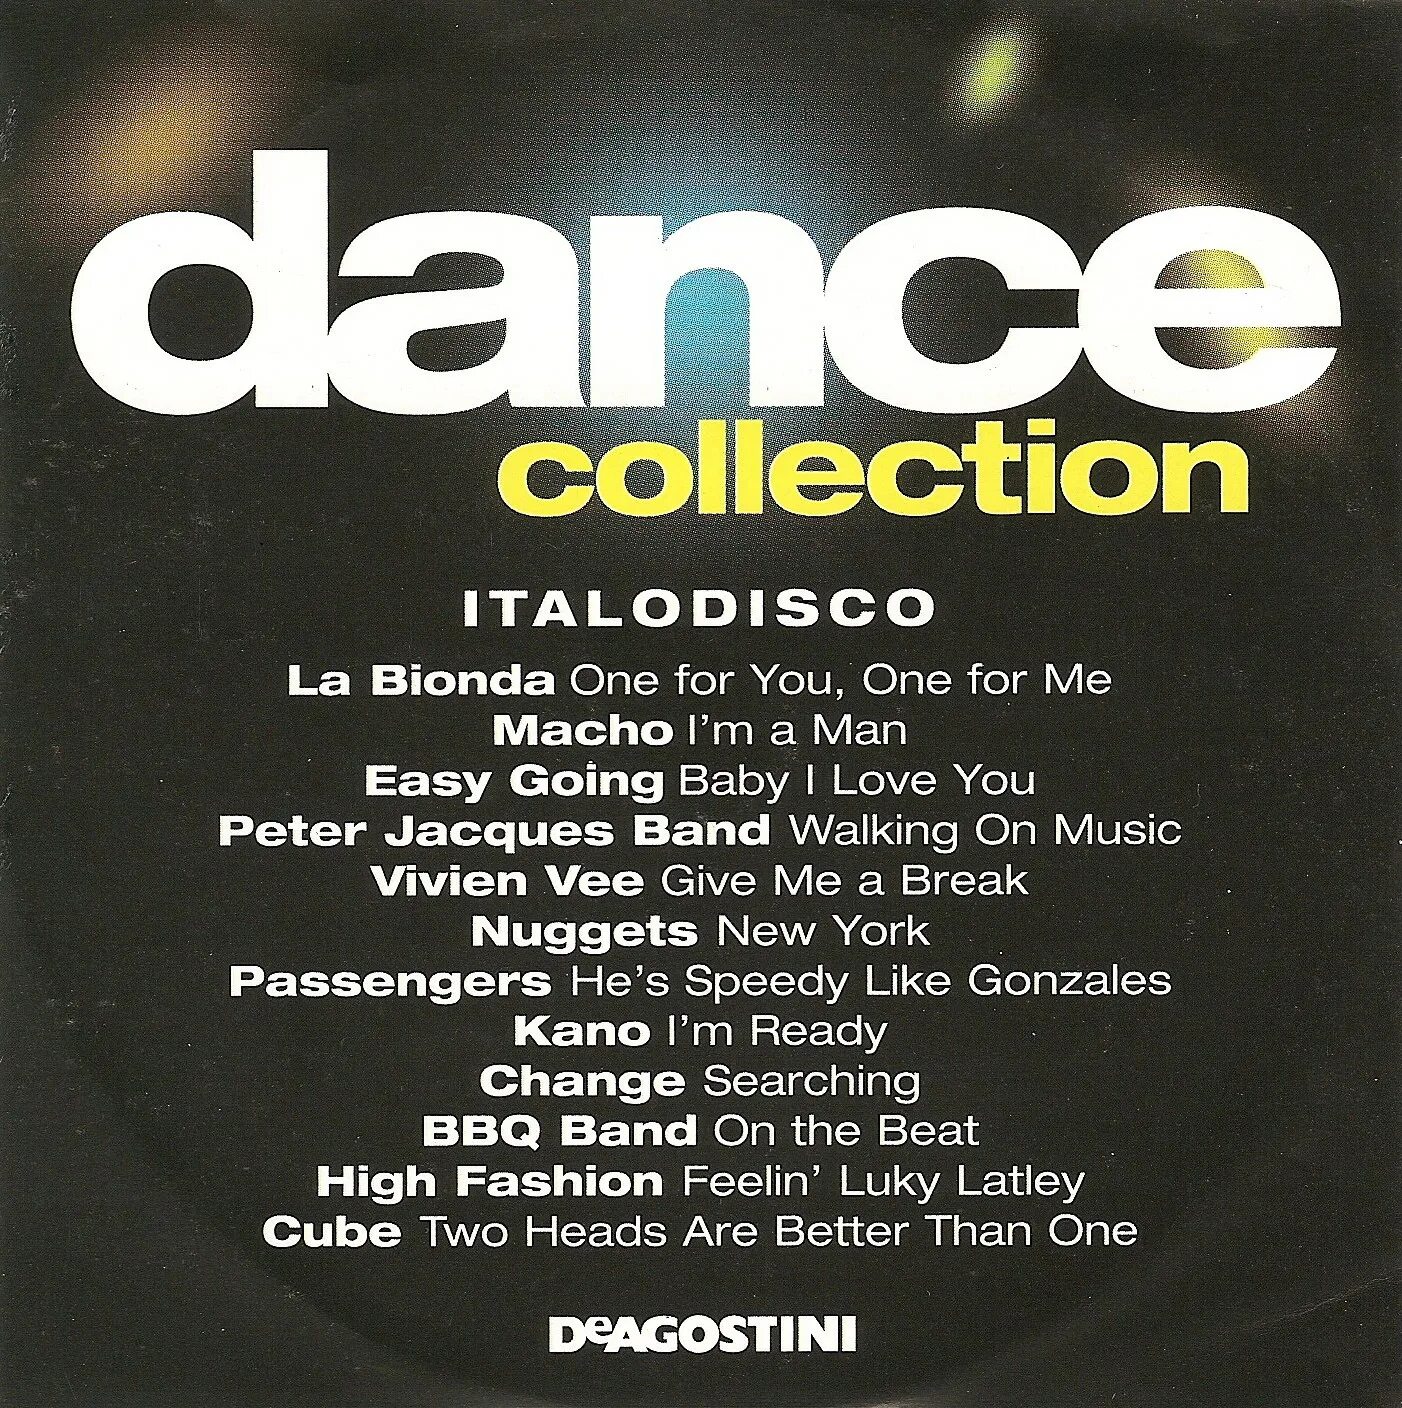 Better disco. Dance collection. Disco Disco good good. Teach in Disco collection 2002. Best Disco '82.